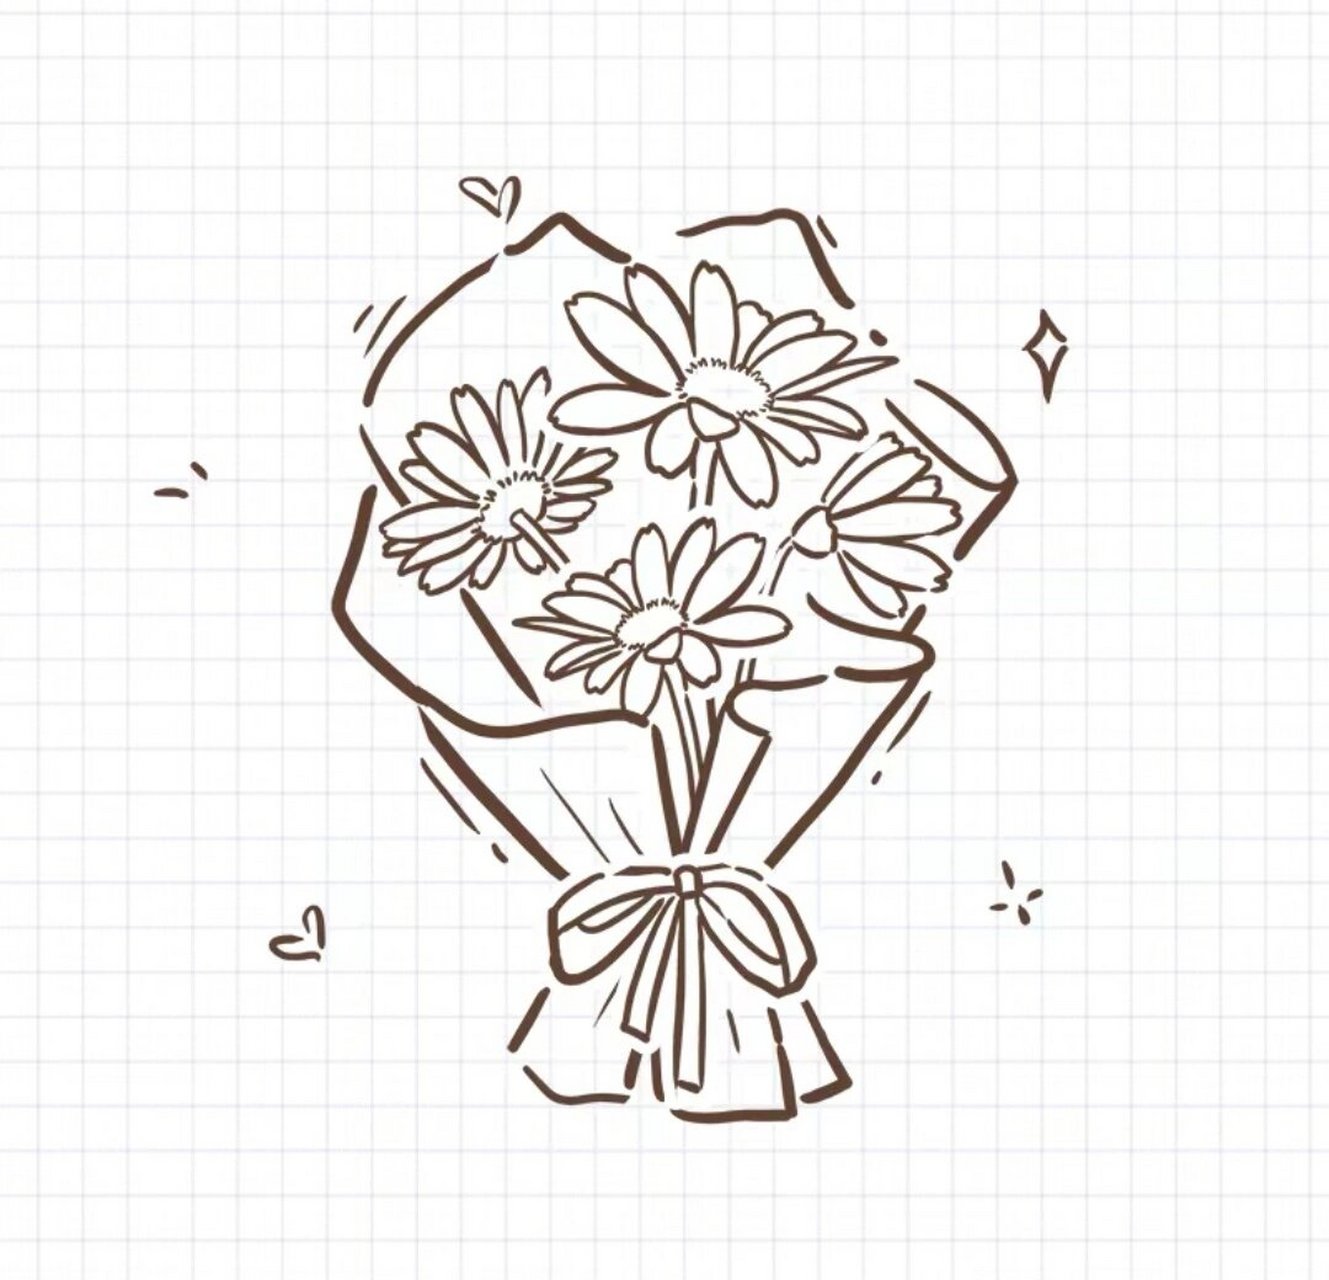 【简笔画花束贺卡】画一束鲜花,画一纸浪漫 